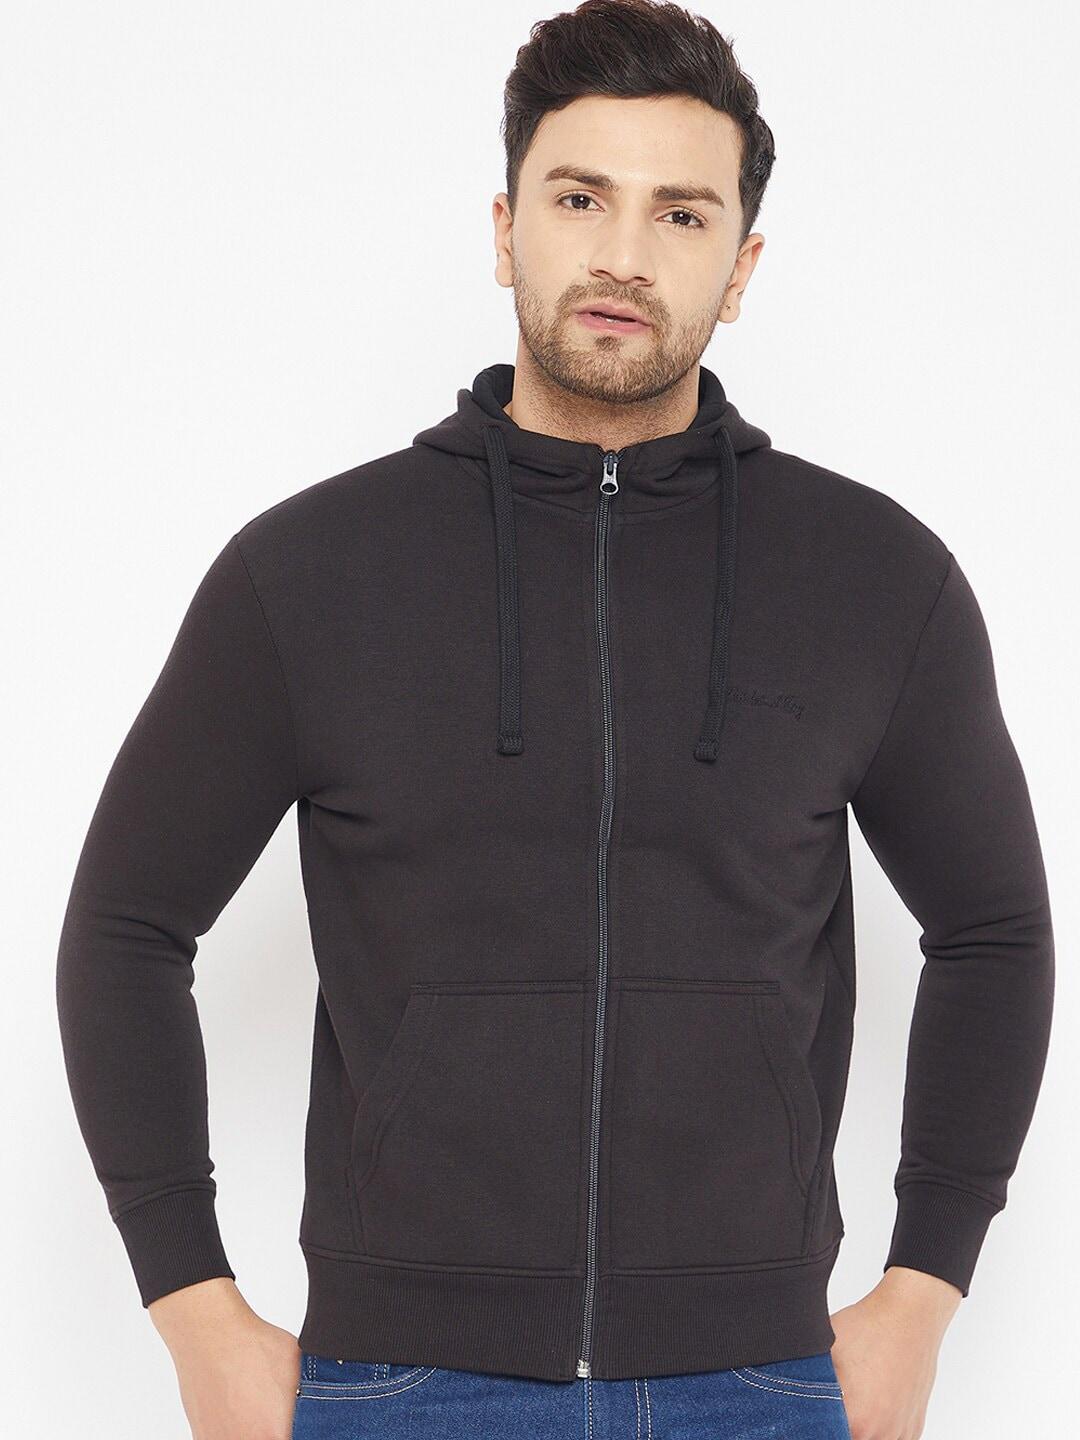 harbor-n-bay-men-black-front-open-cotton-hooded-sweatshirt